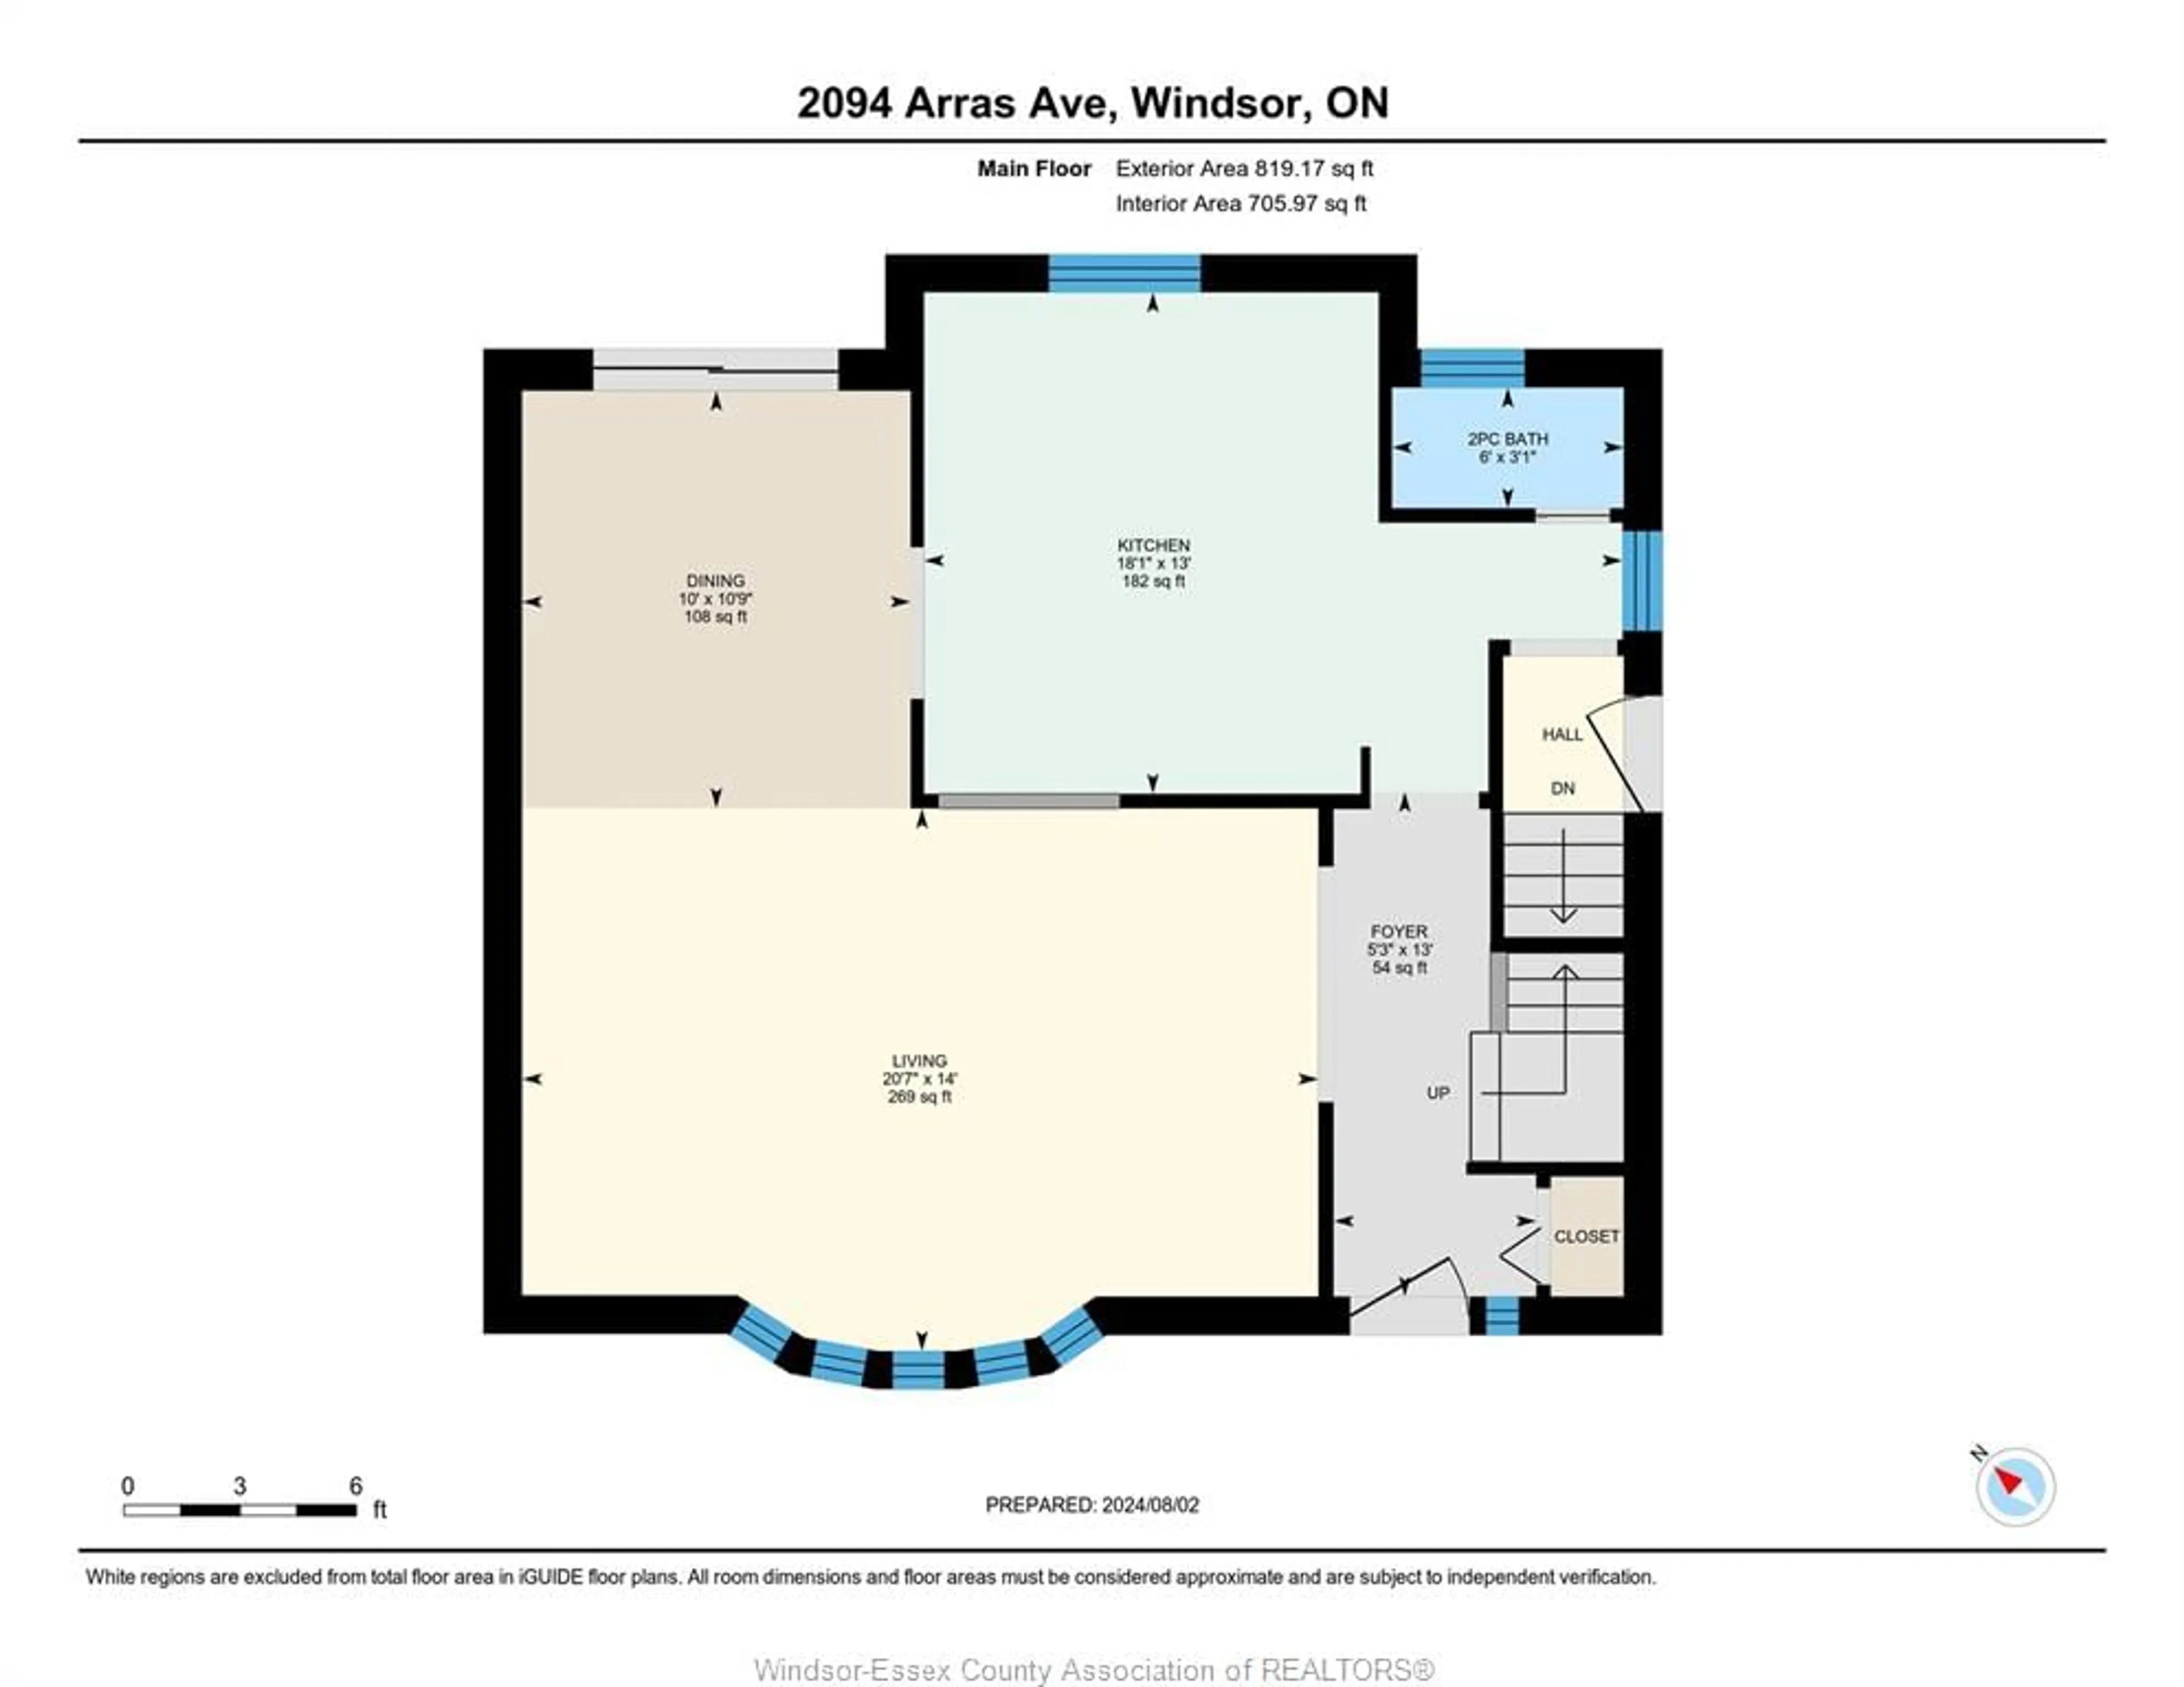 Floor plan for 2094 ARRAS, Windsor Ontario N8W 1T5